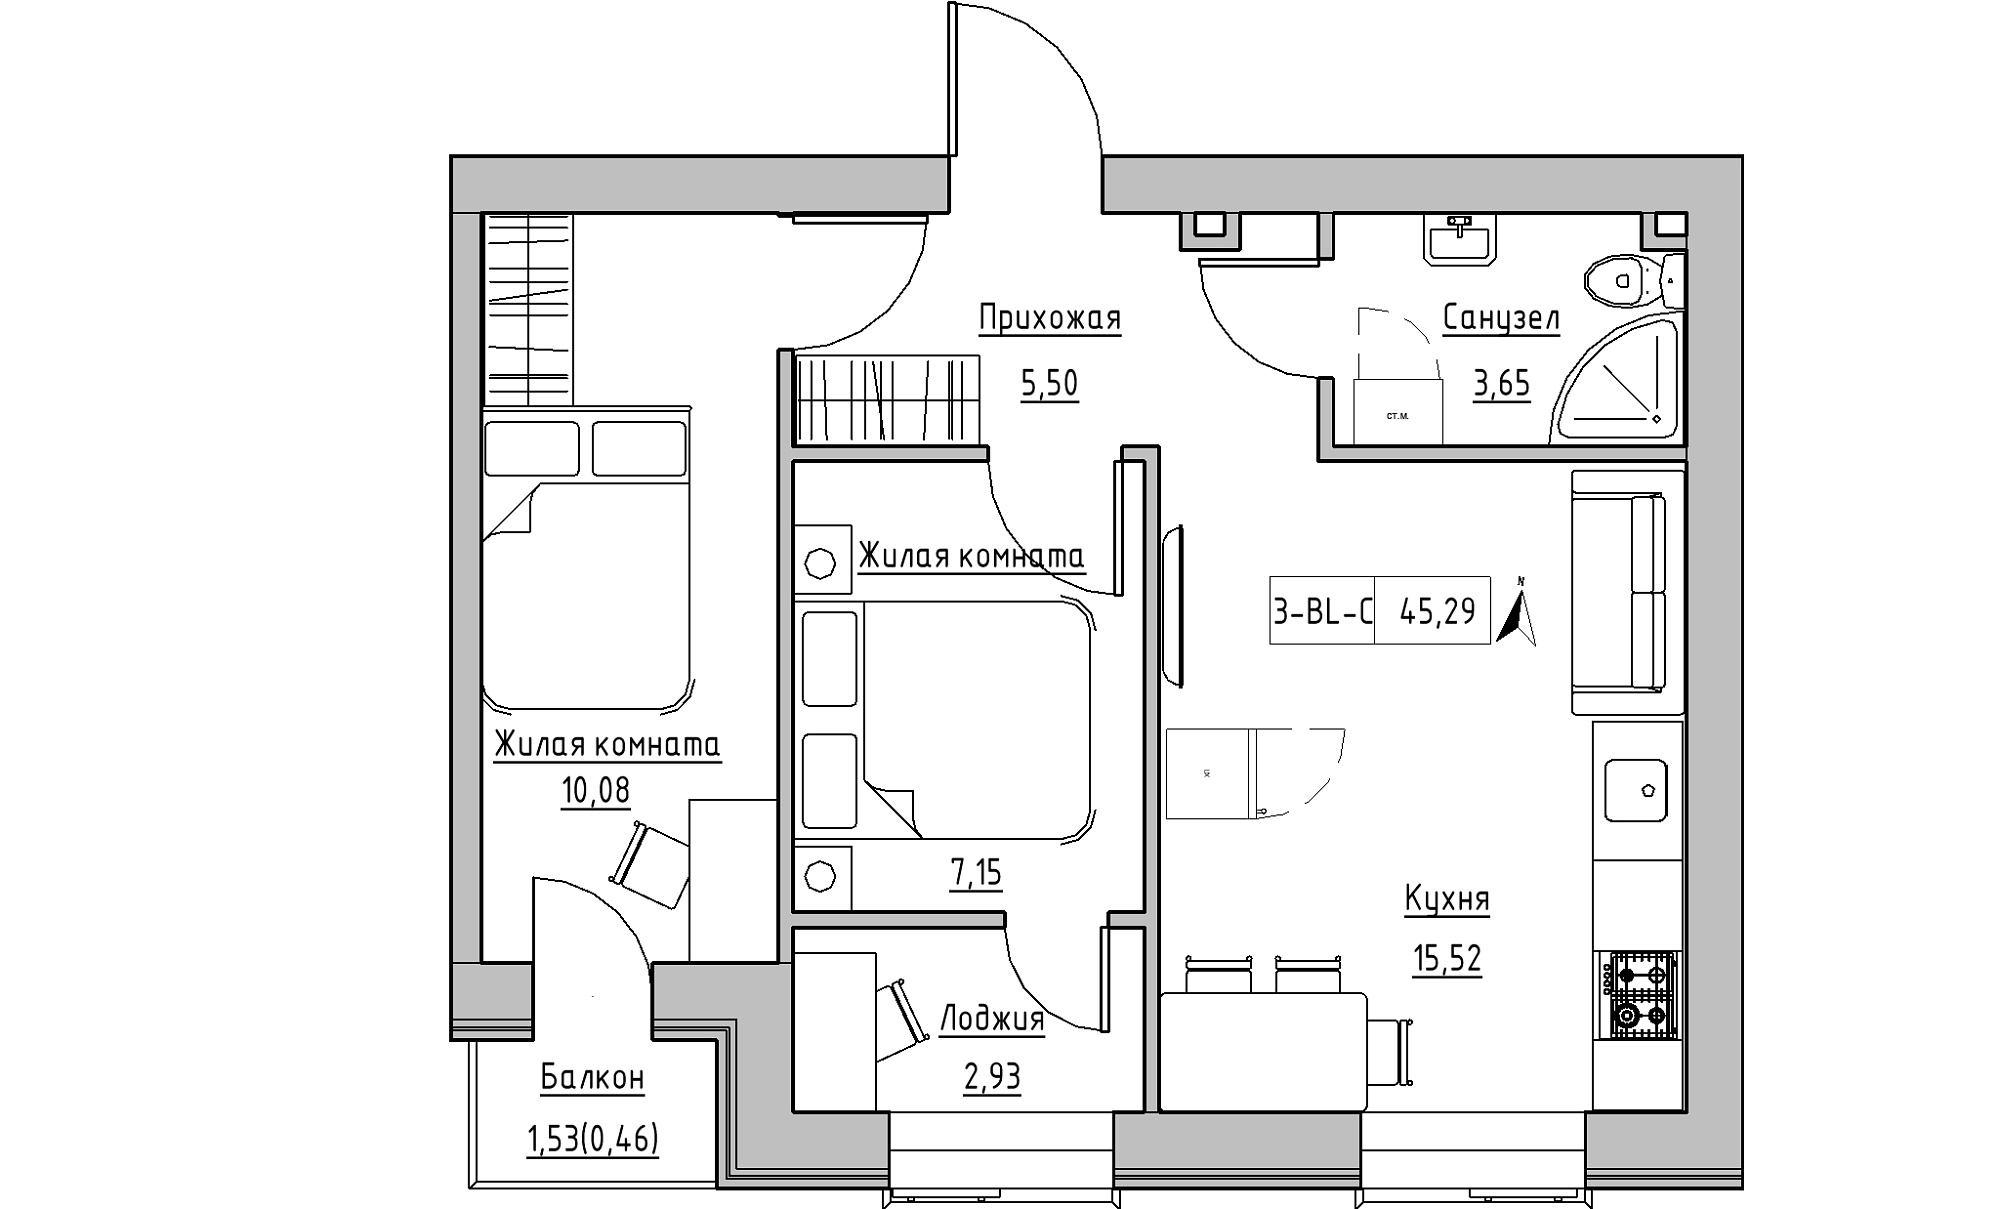 Планування 2-к квартира площею 45.29м2, KS-016-02/0008.